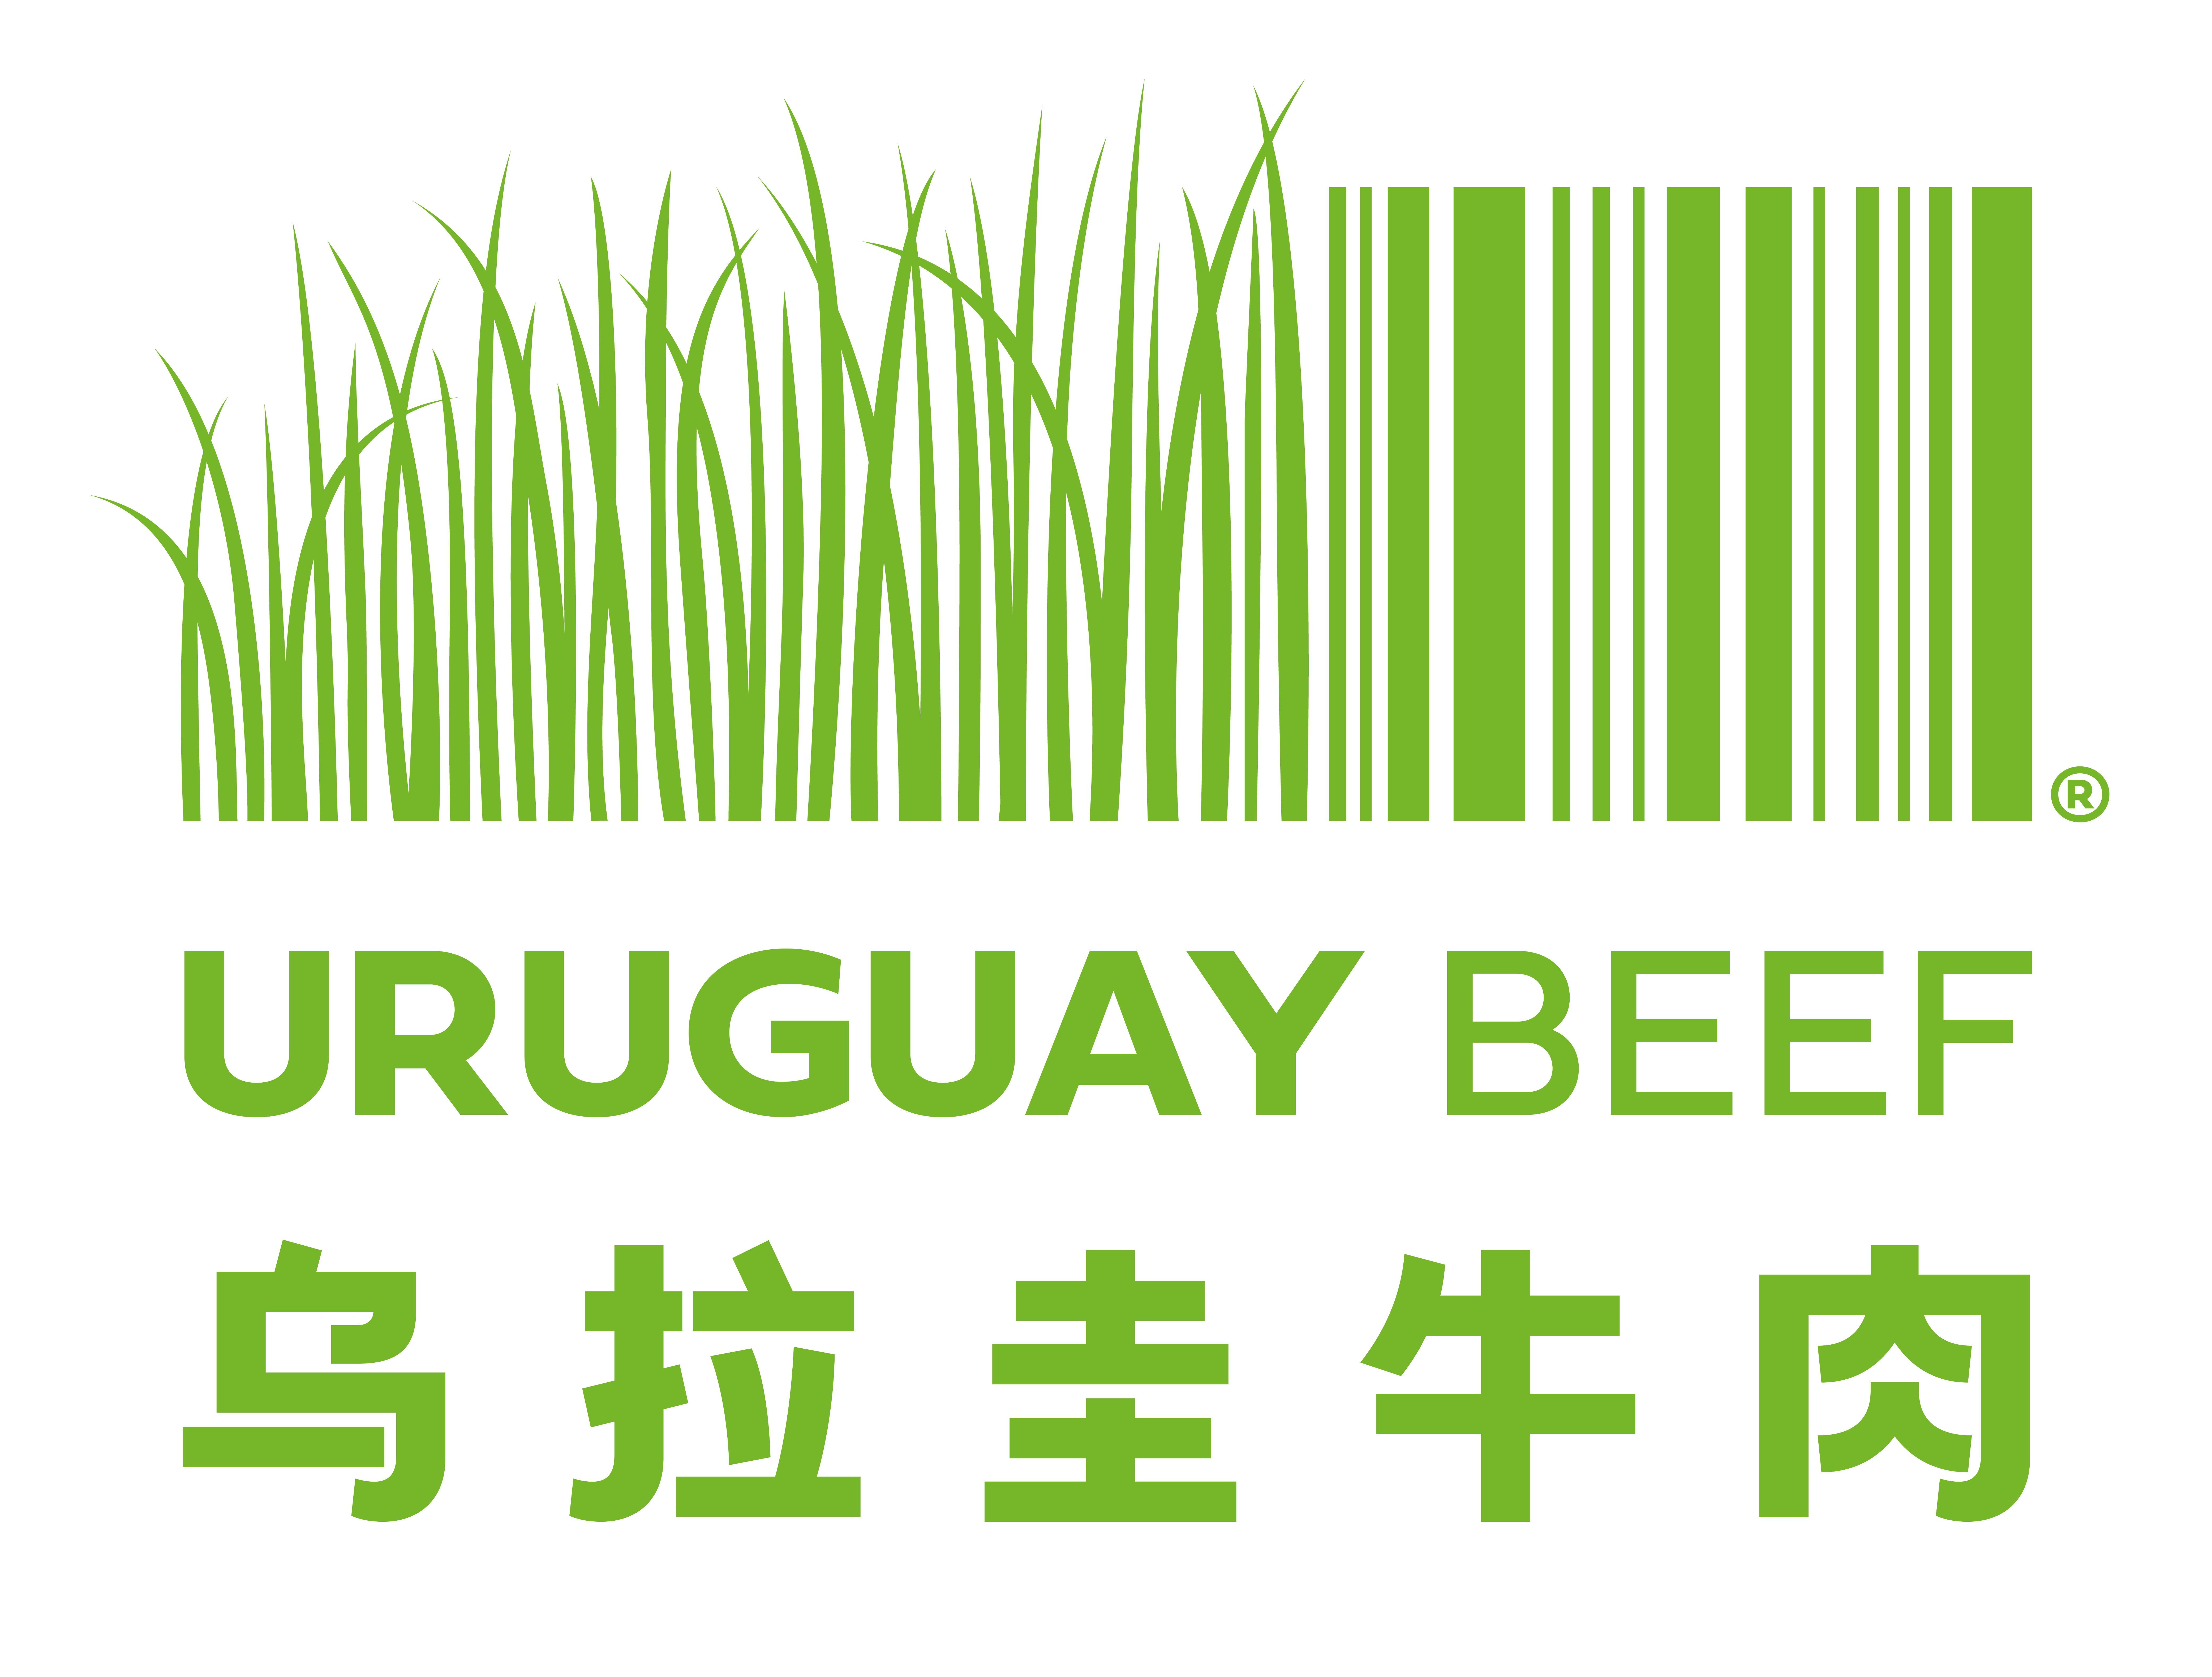 乌拉圭牛肉